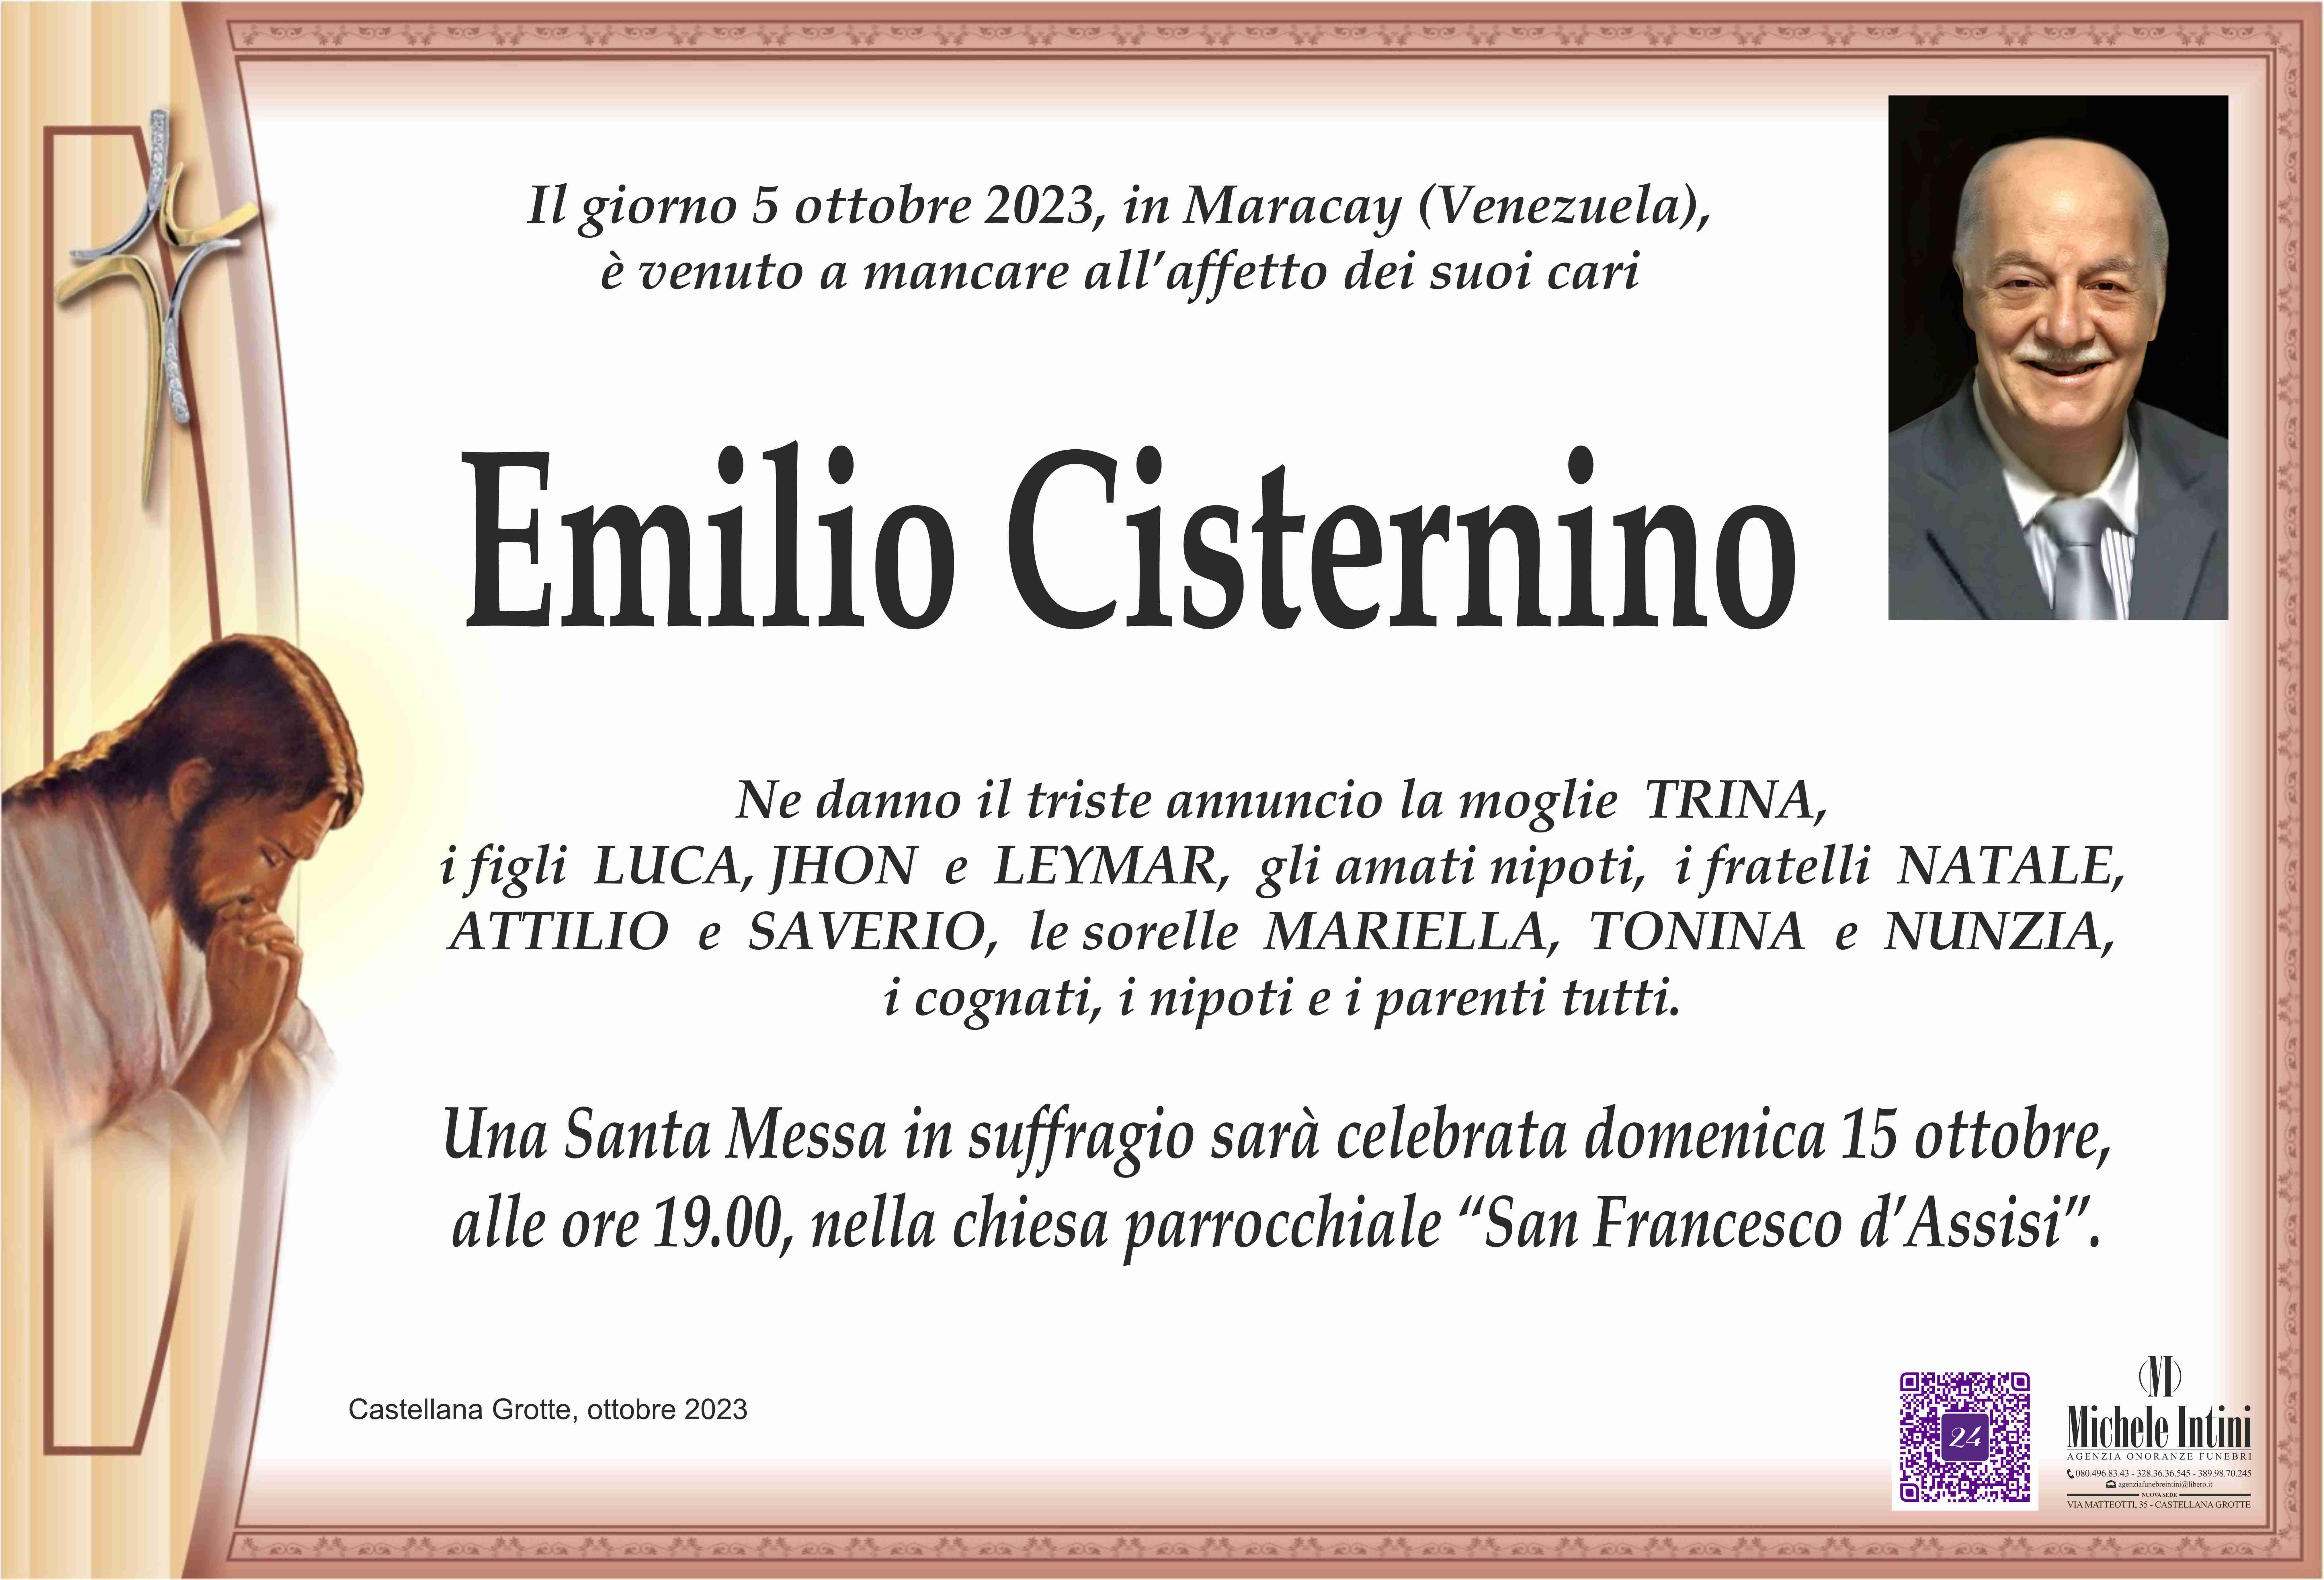 Emilio Cisternino